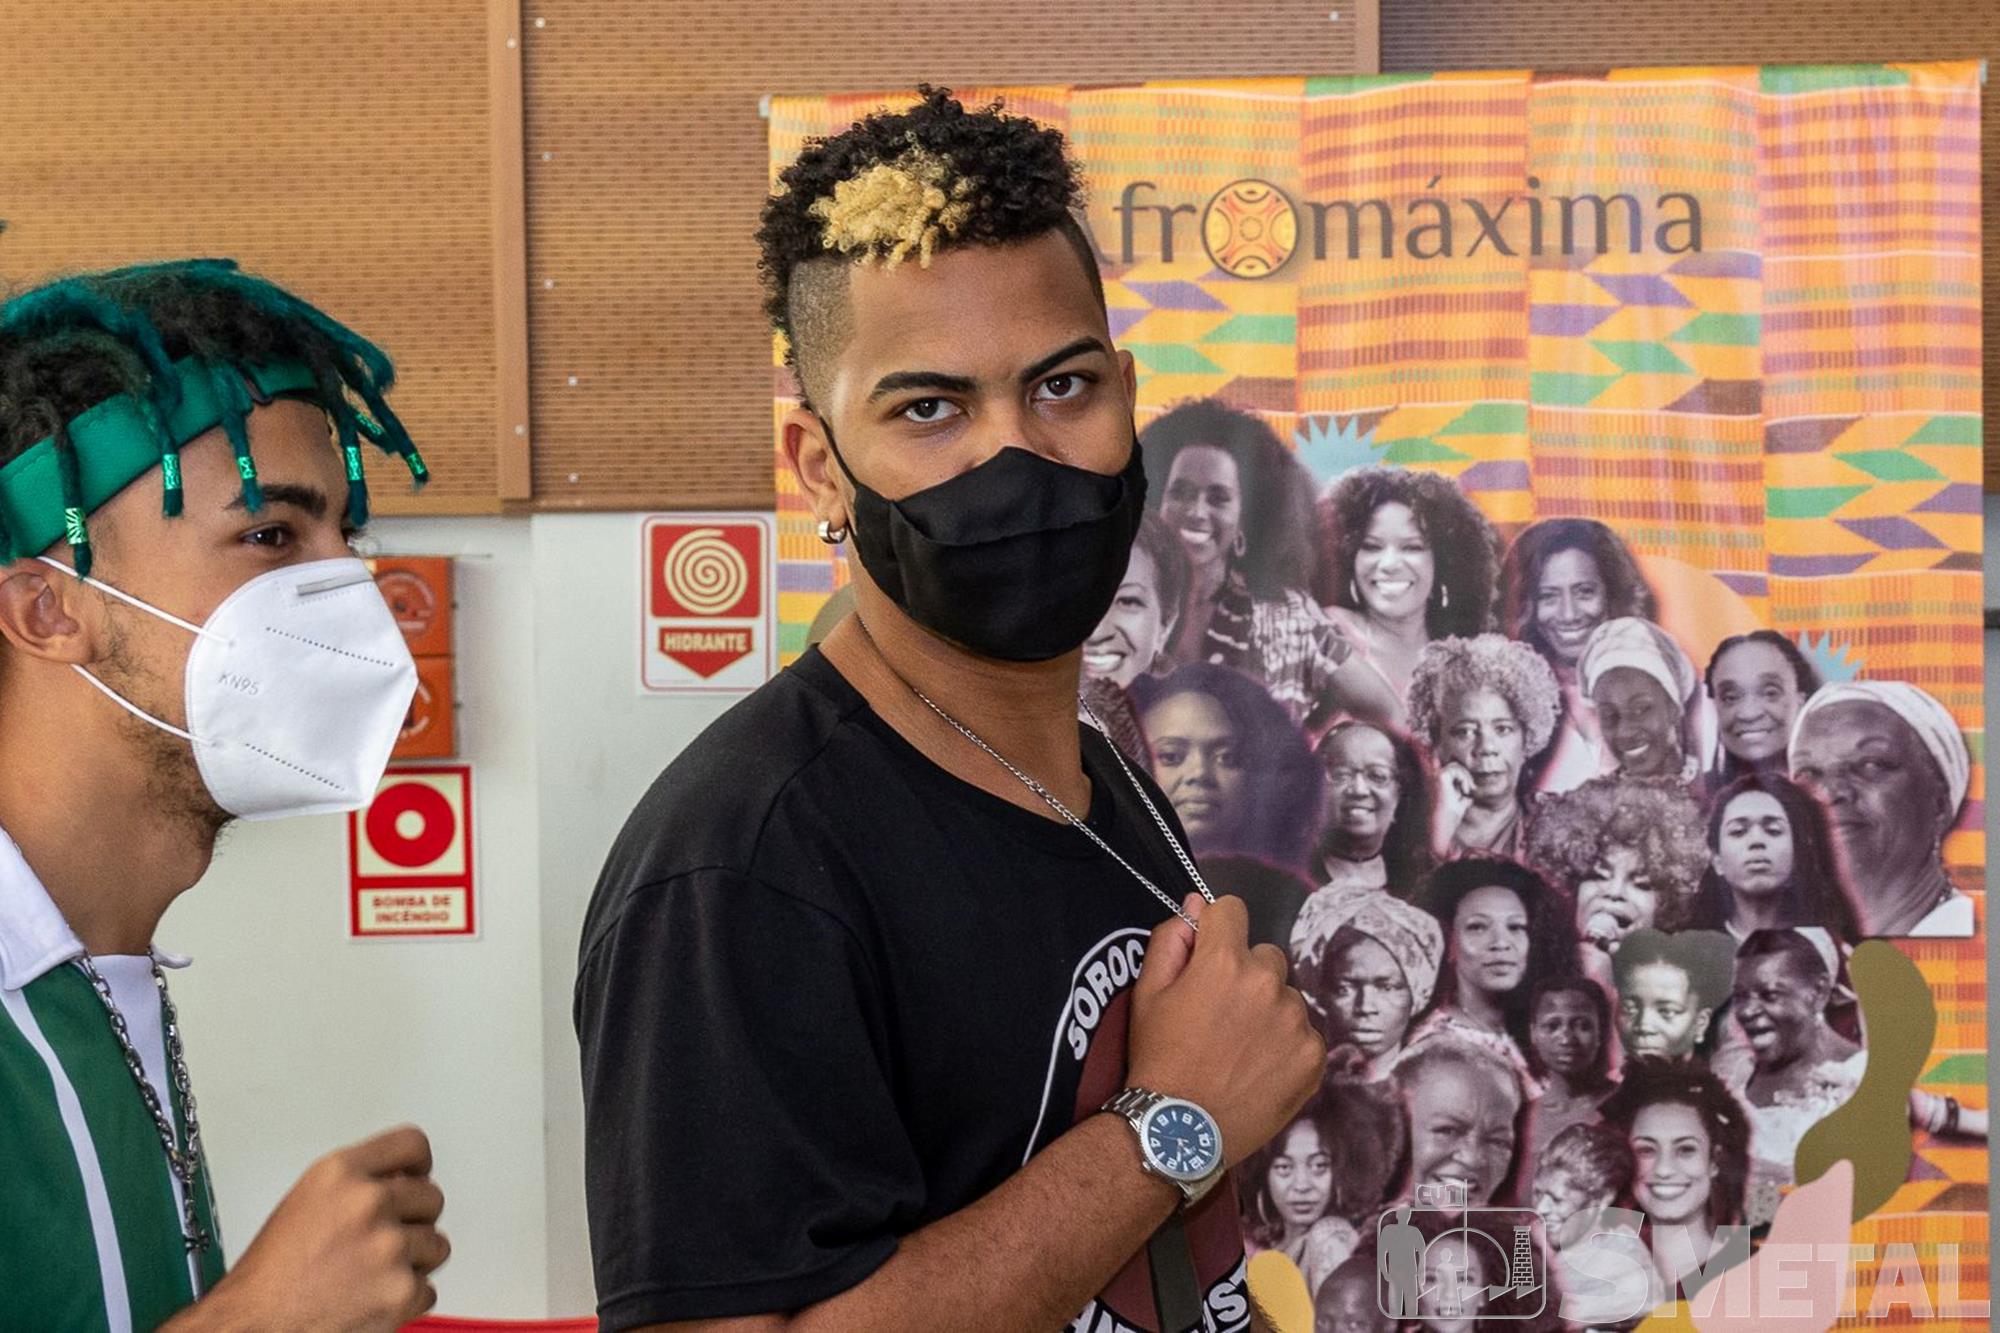 2ª Mostra de Cultura e Arte Negra "Ubuntu SMetal"; veja as fotos 